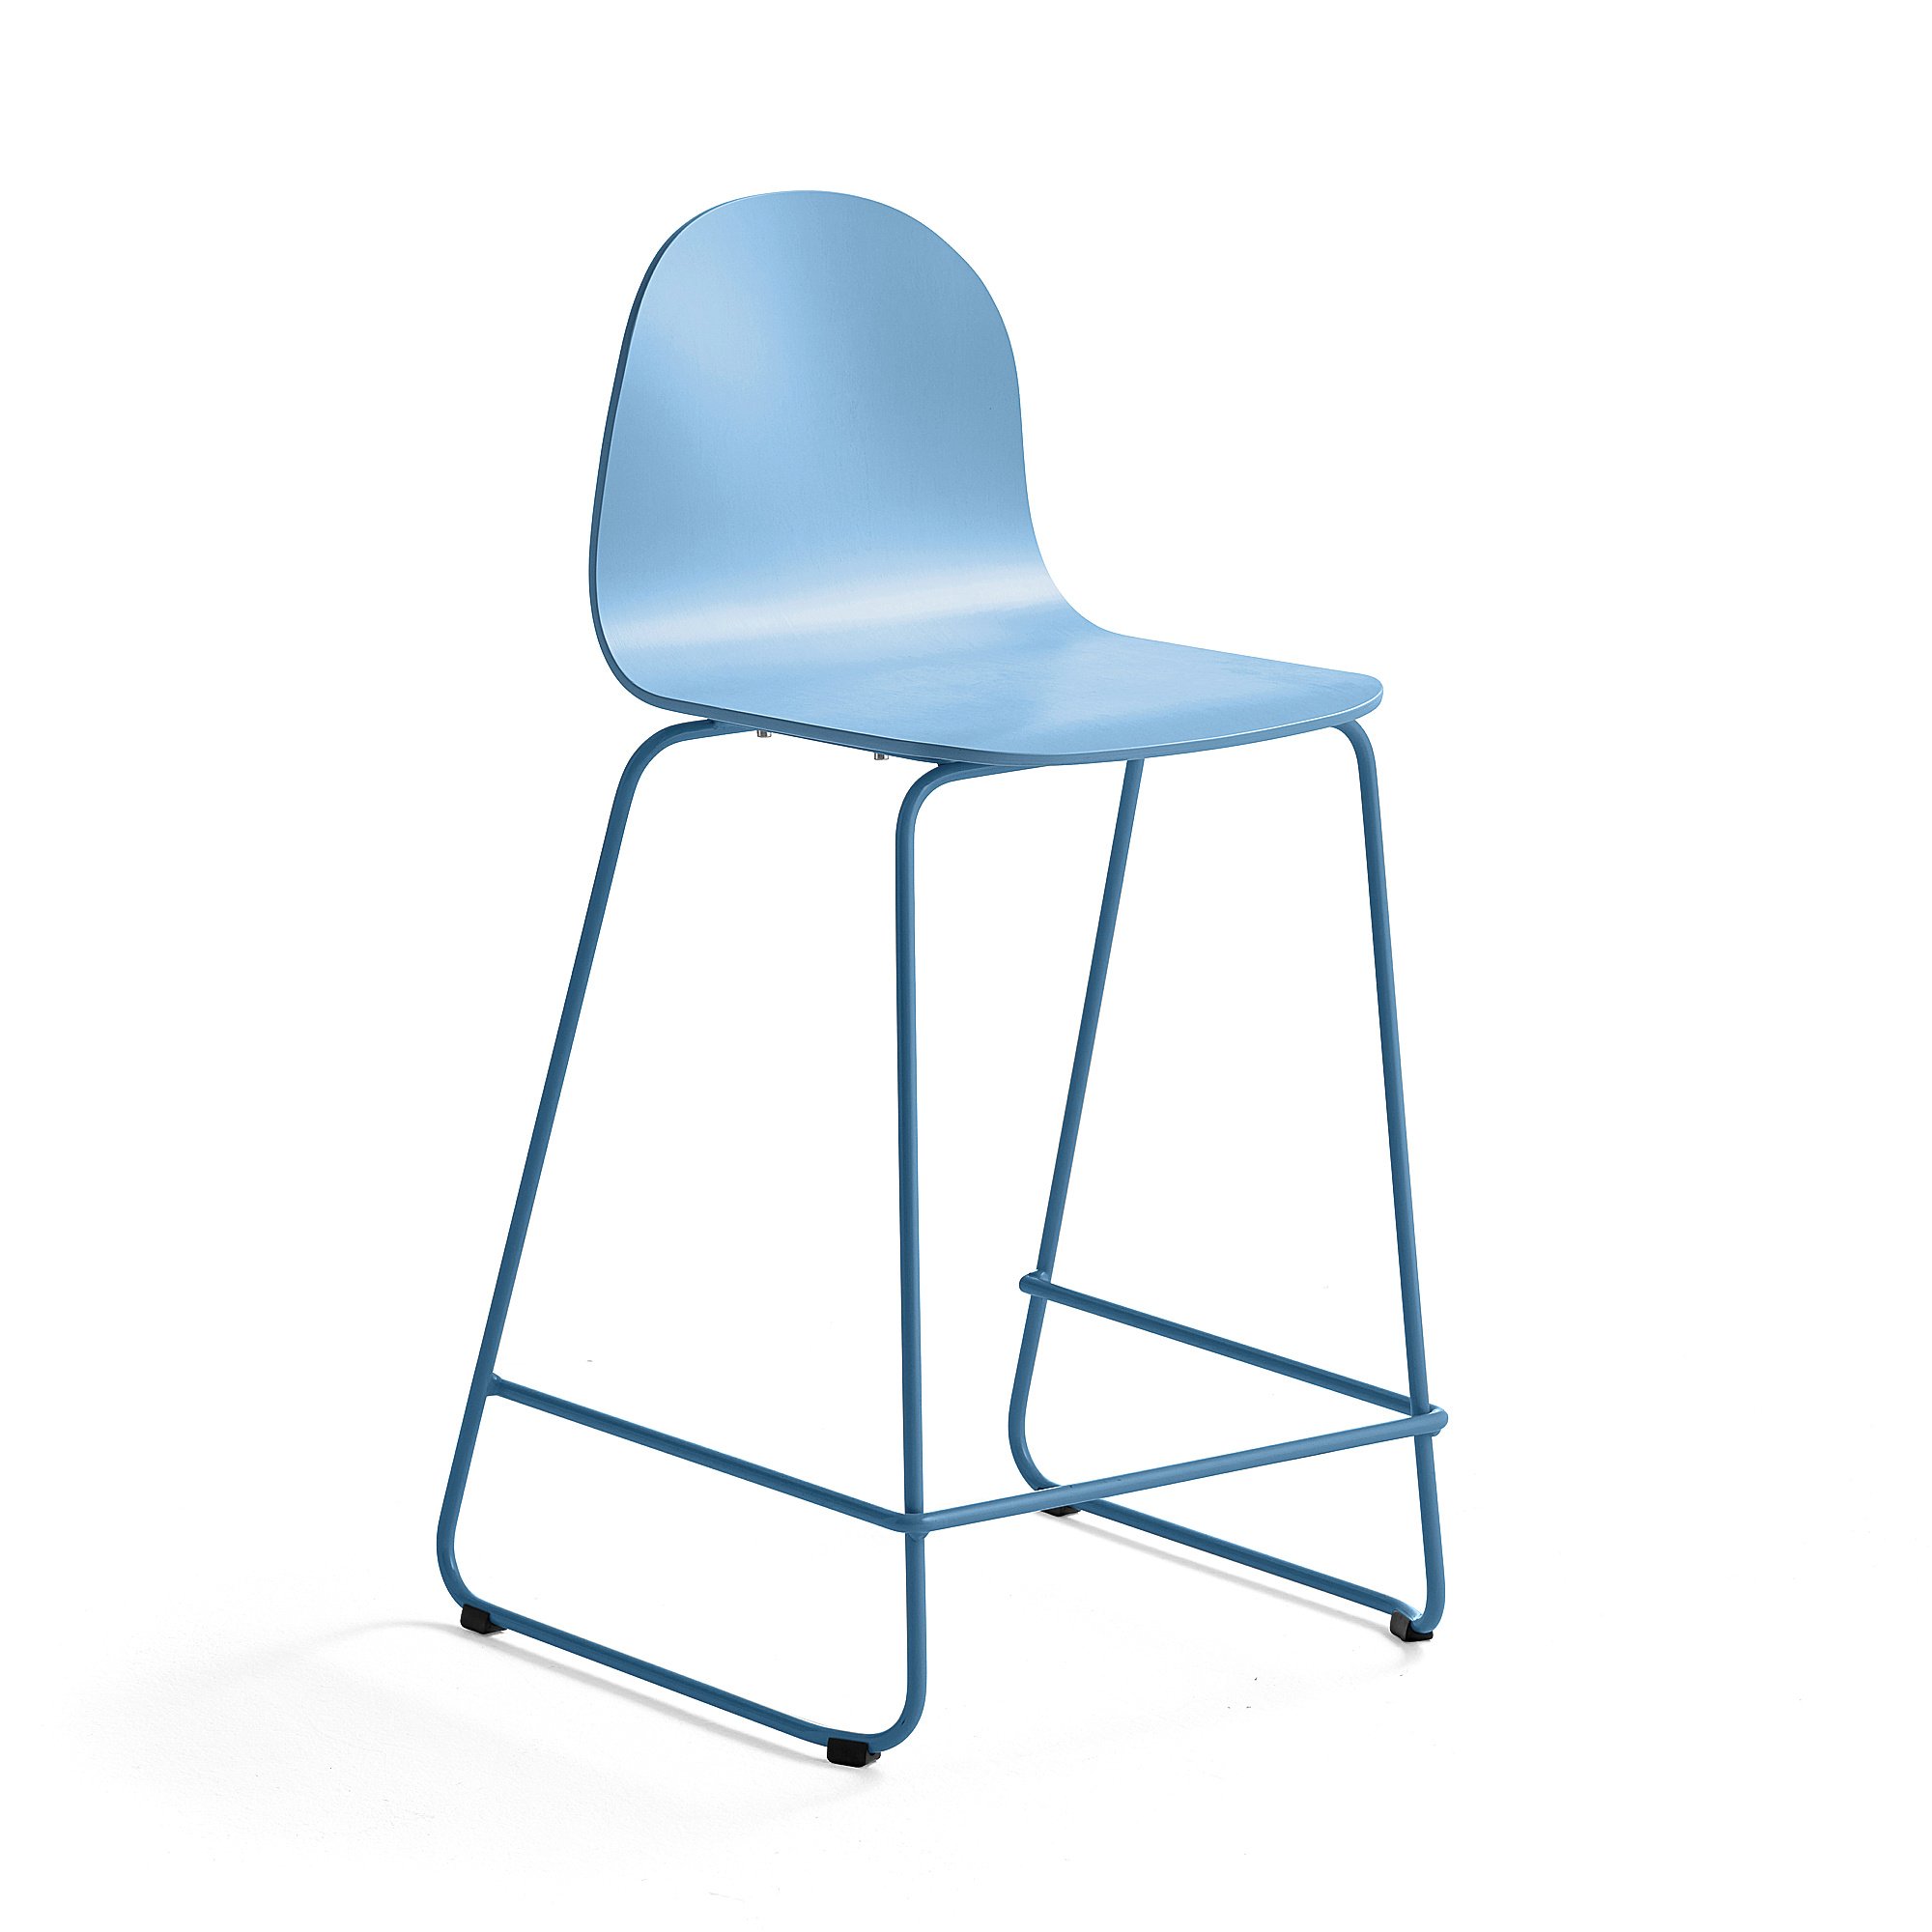 Barová židle GANDER, výška sedáku 630 mm, lakovaná skořepina, modrá